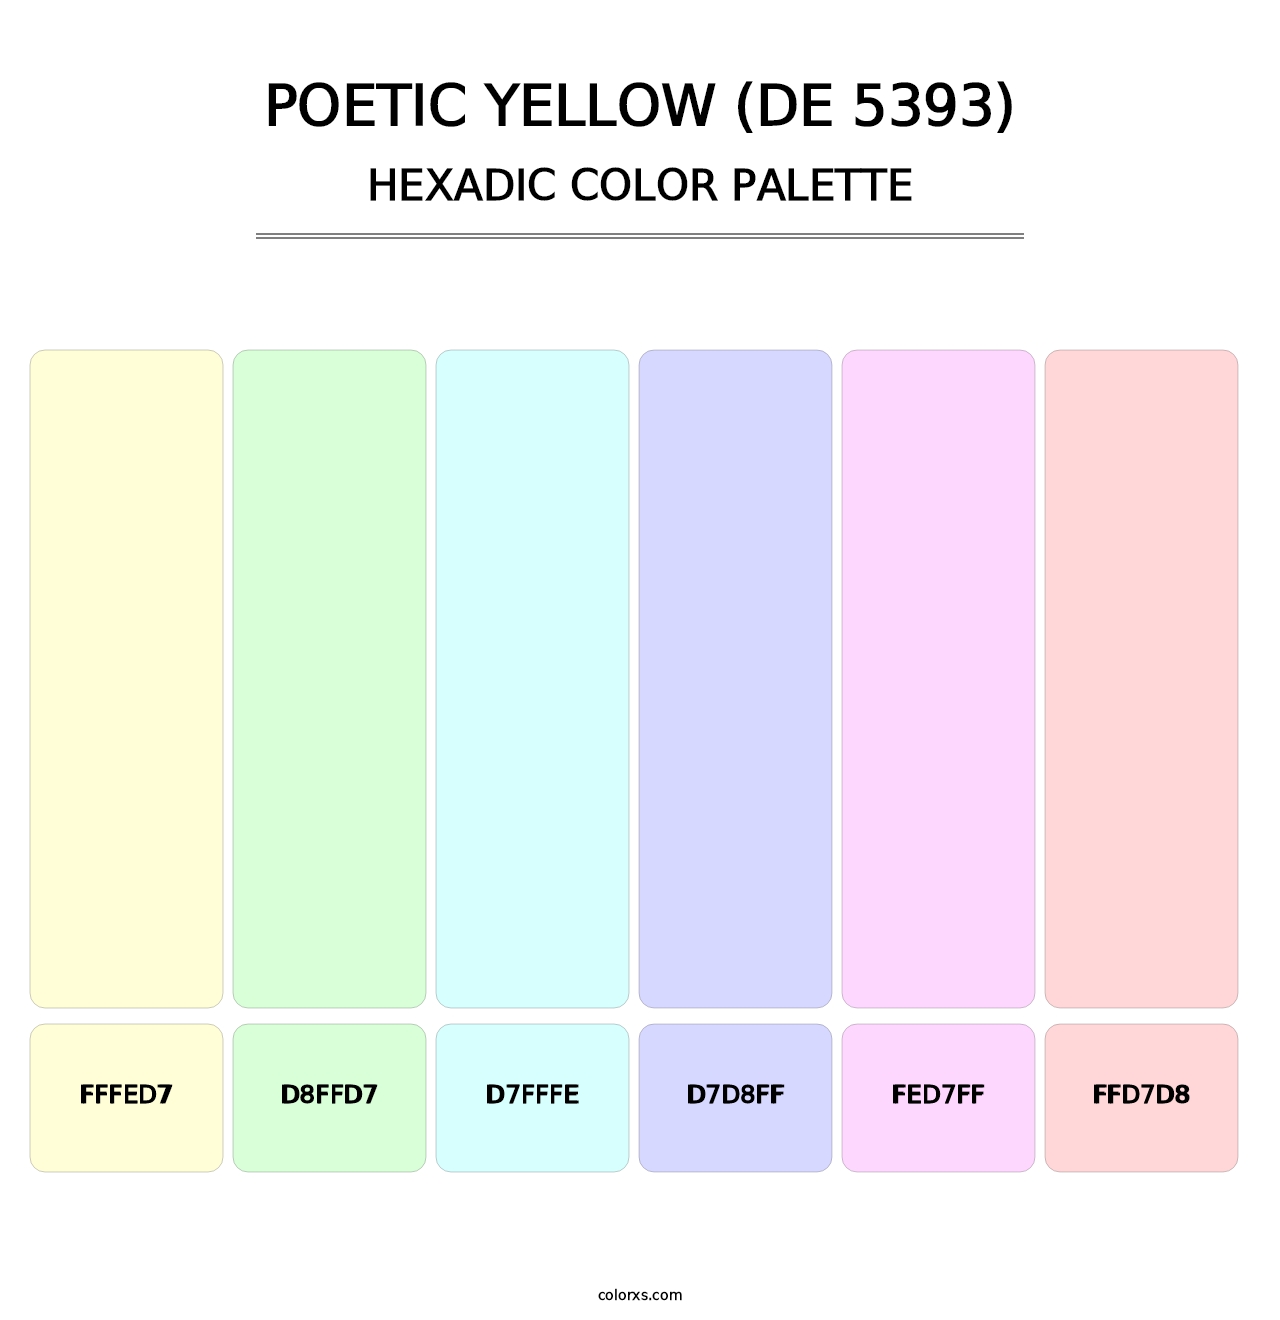 Poetic Yellow (DE 5393) - Hexadic Color Palette